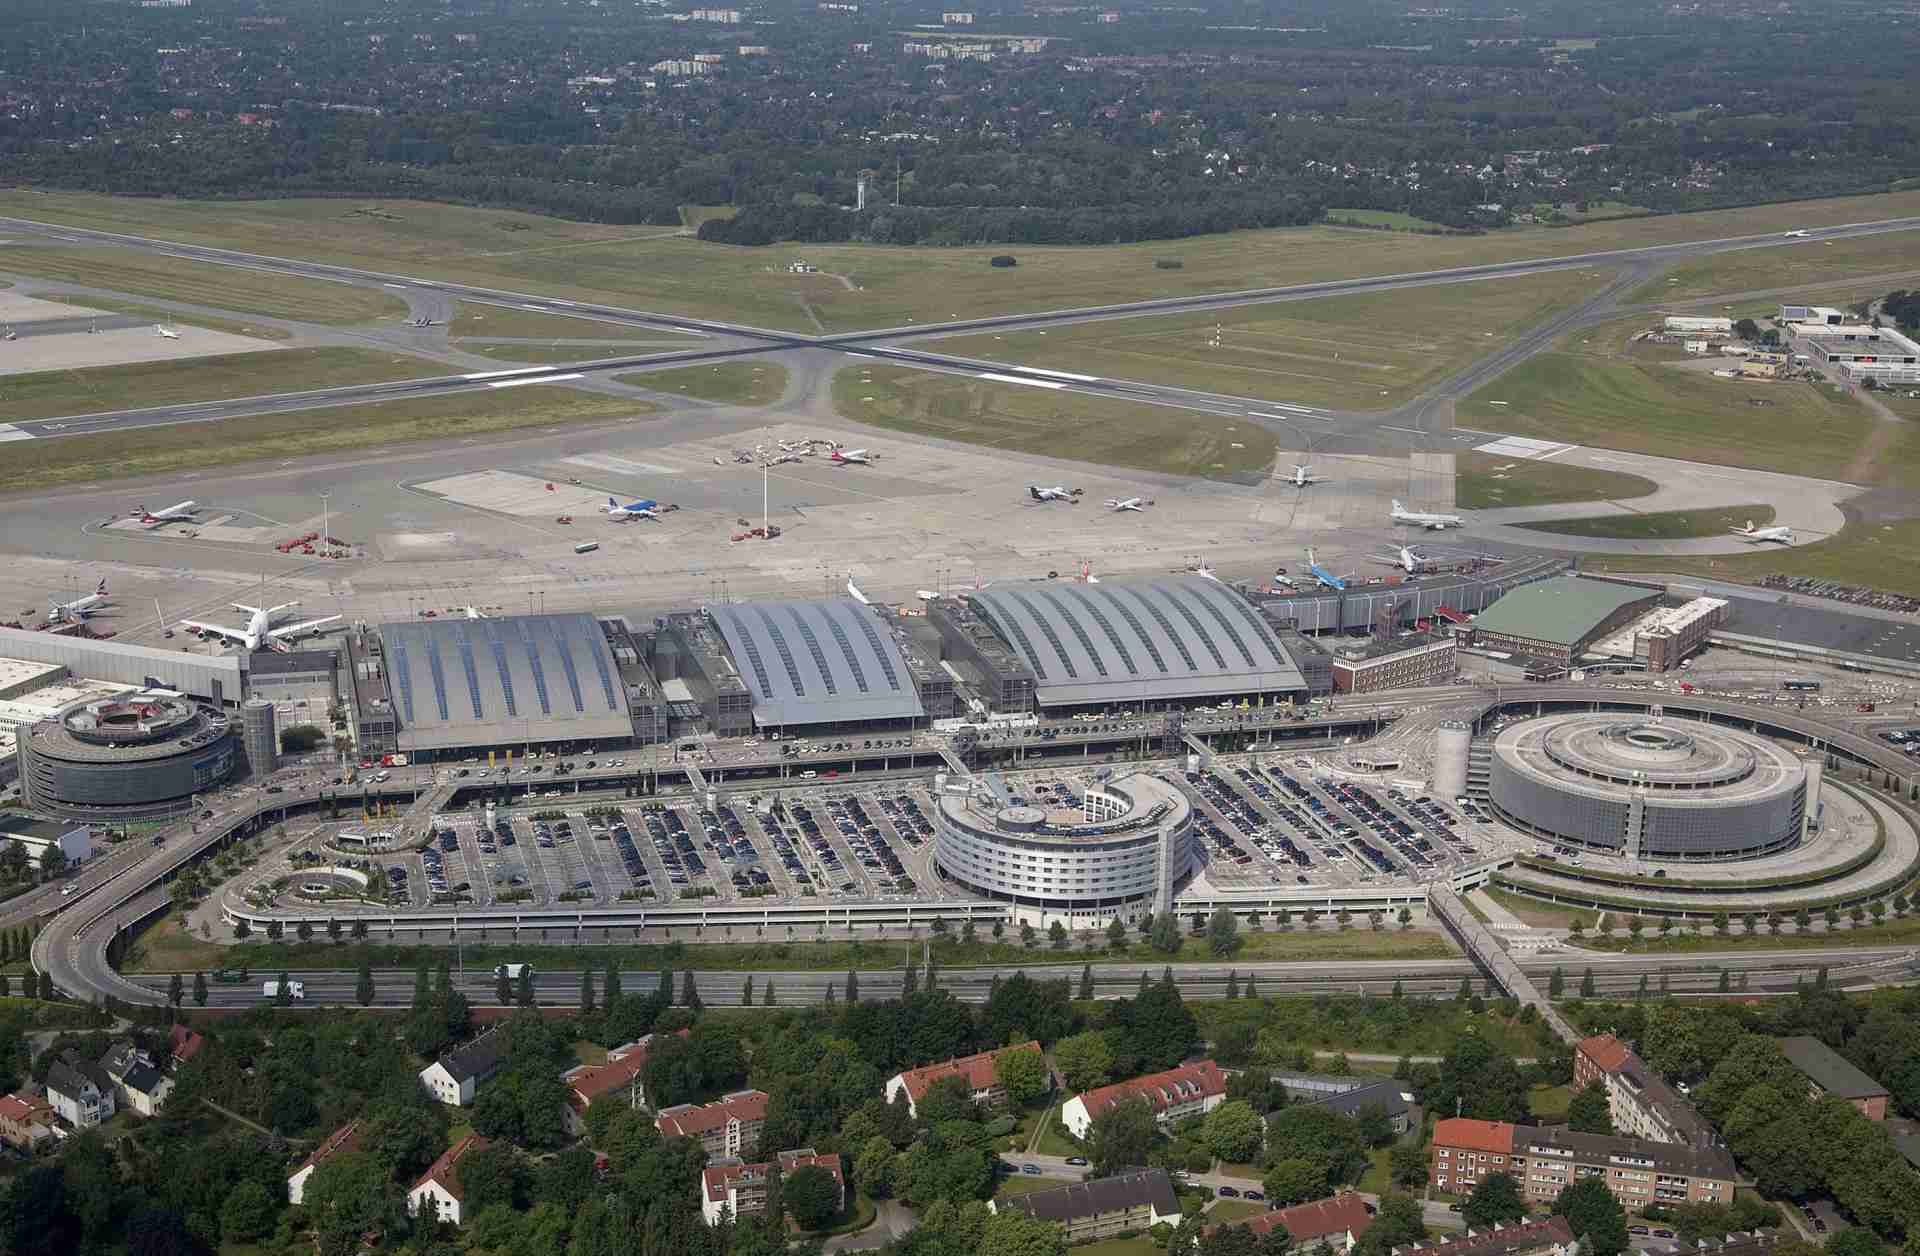 Flughafen Hamburg aus der Luftperspektive